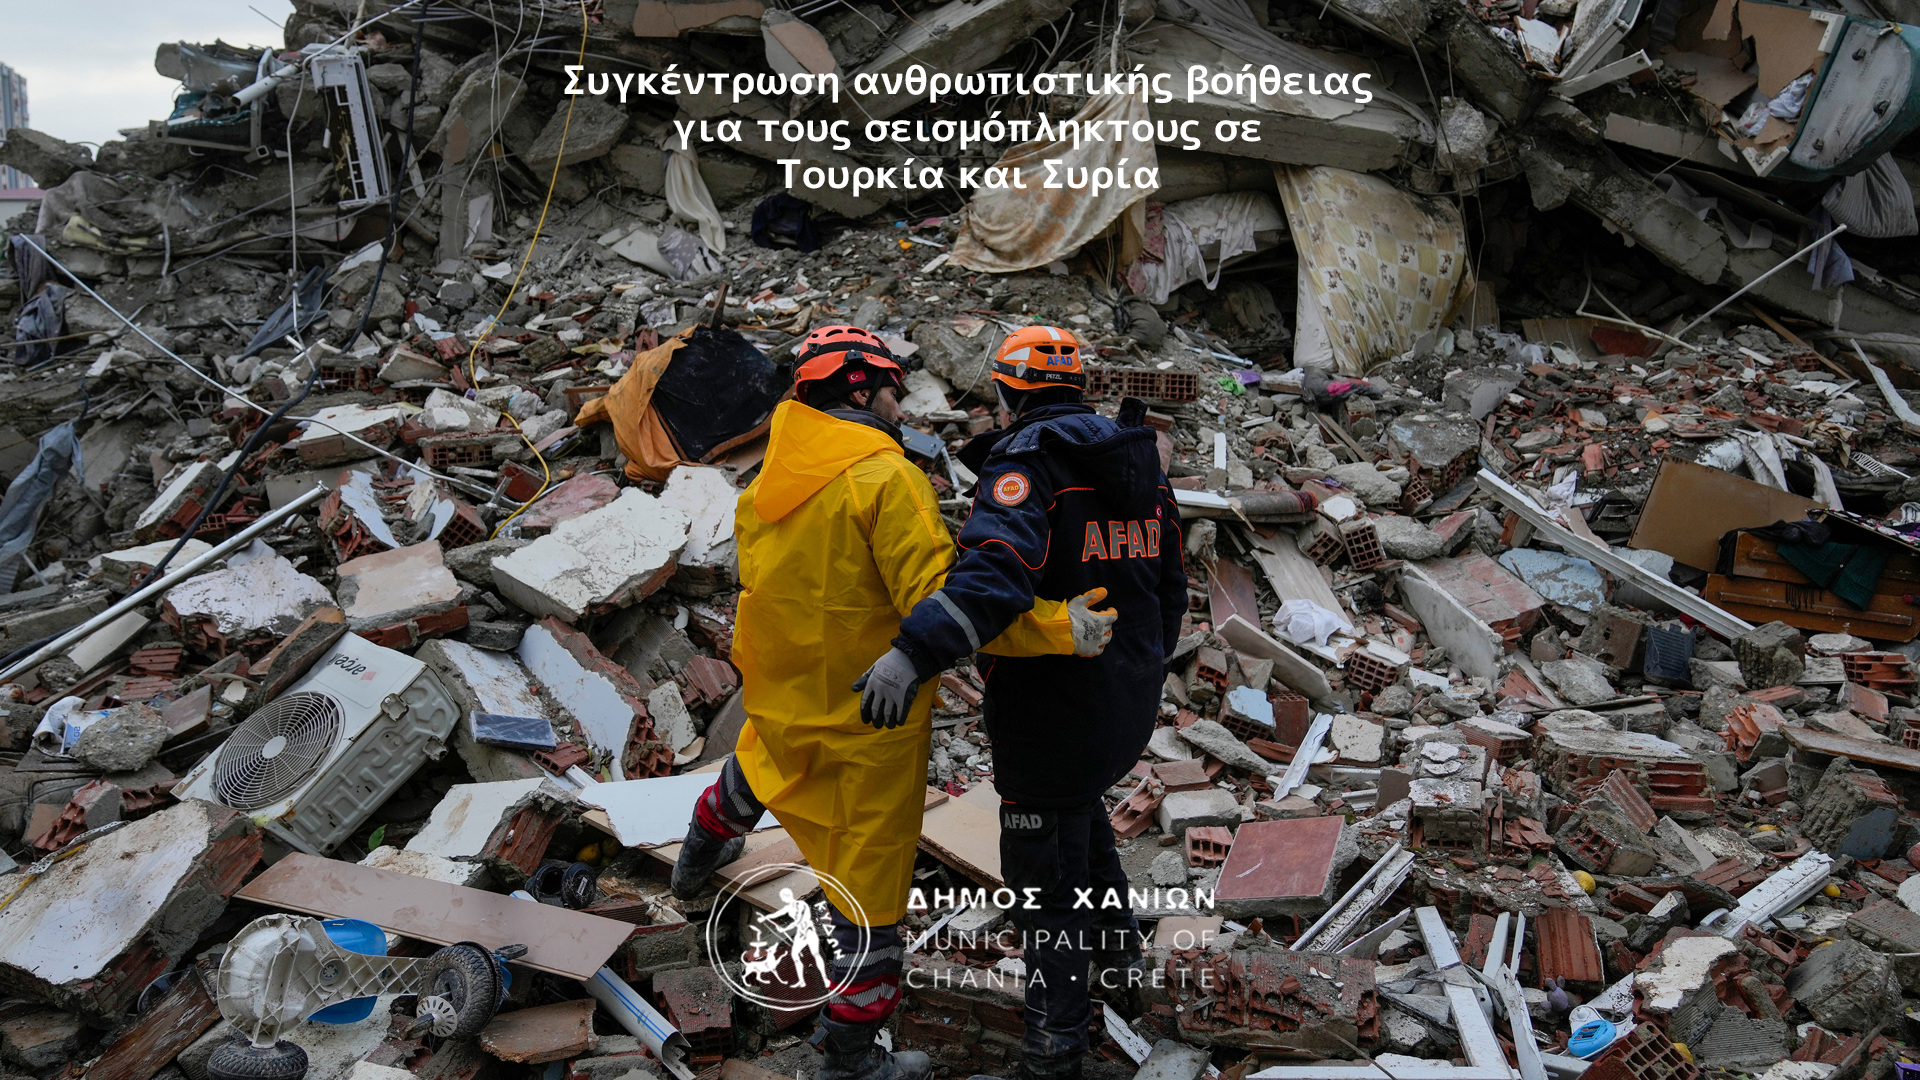 Ανθρωπιστική βοήθεια στους σεισμόπληκτους σε Τουρκία και Συρία από το Δήμο Χανίων